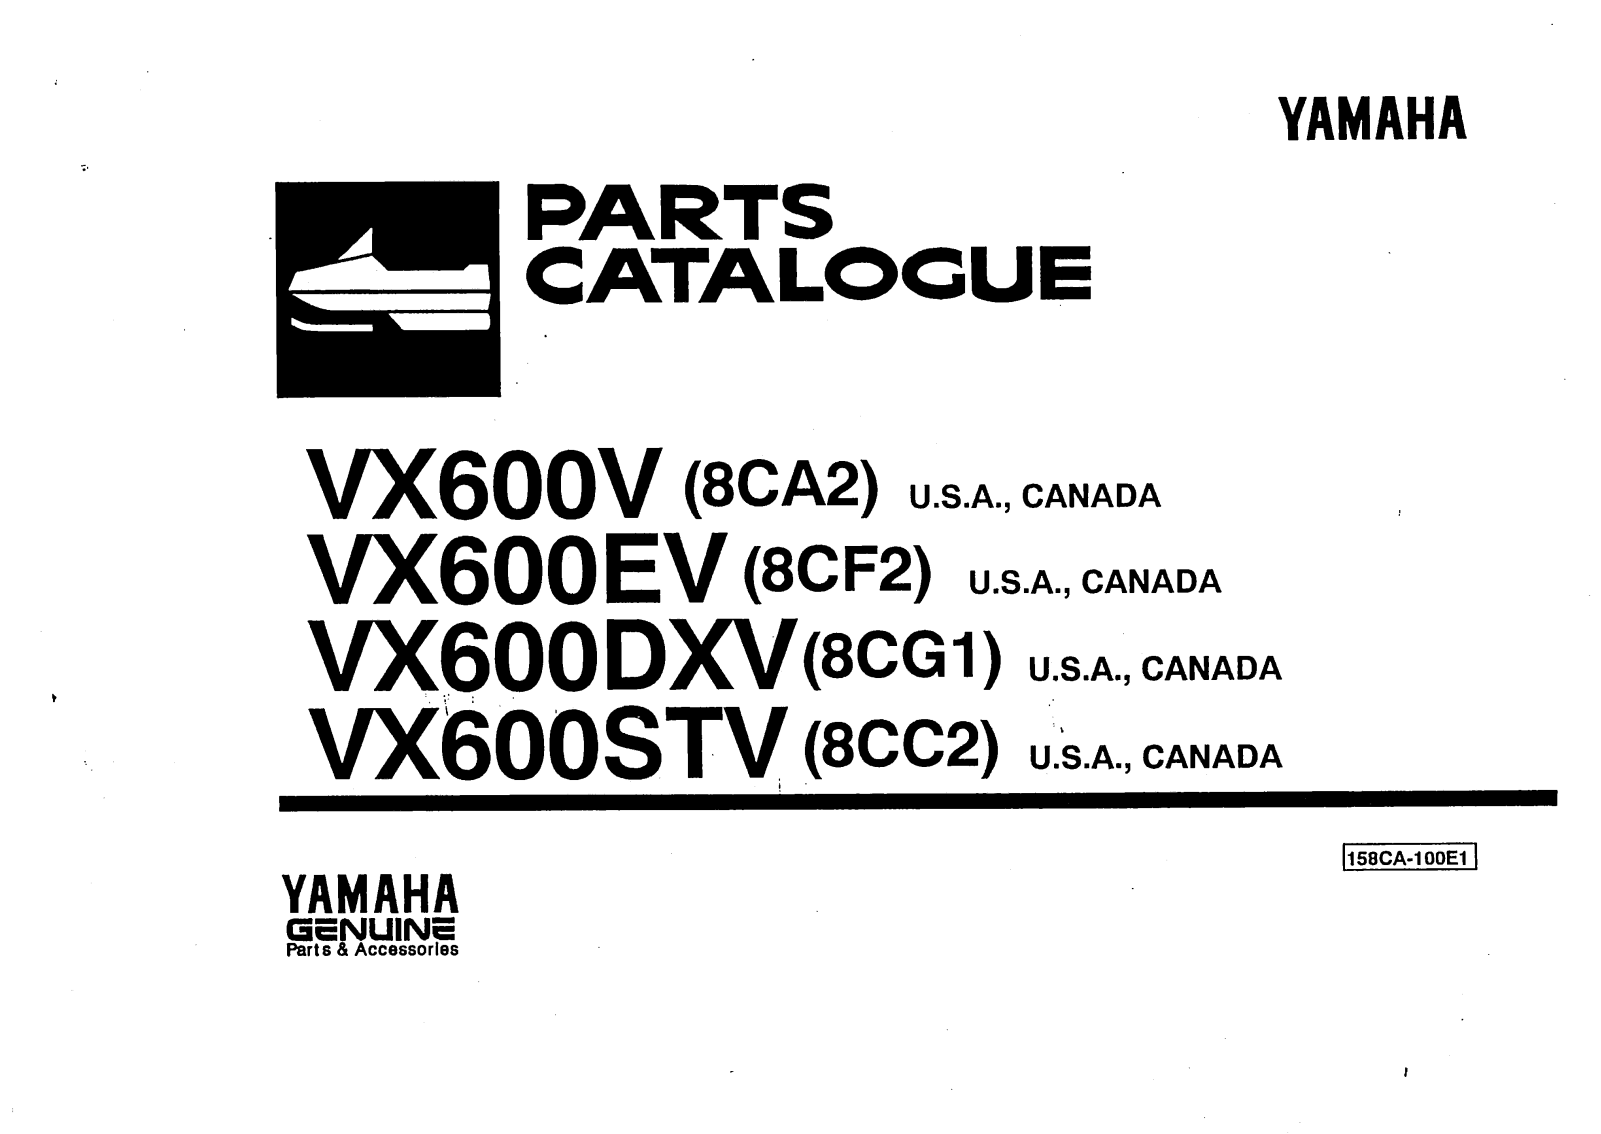 YAMAHA VX600STV, VX600V, VX600EV, VX600DXV PARTS CATALOGUE